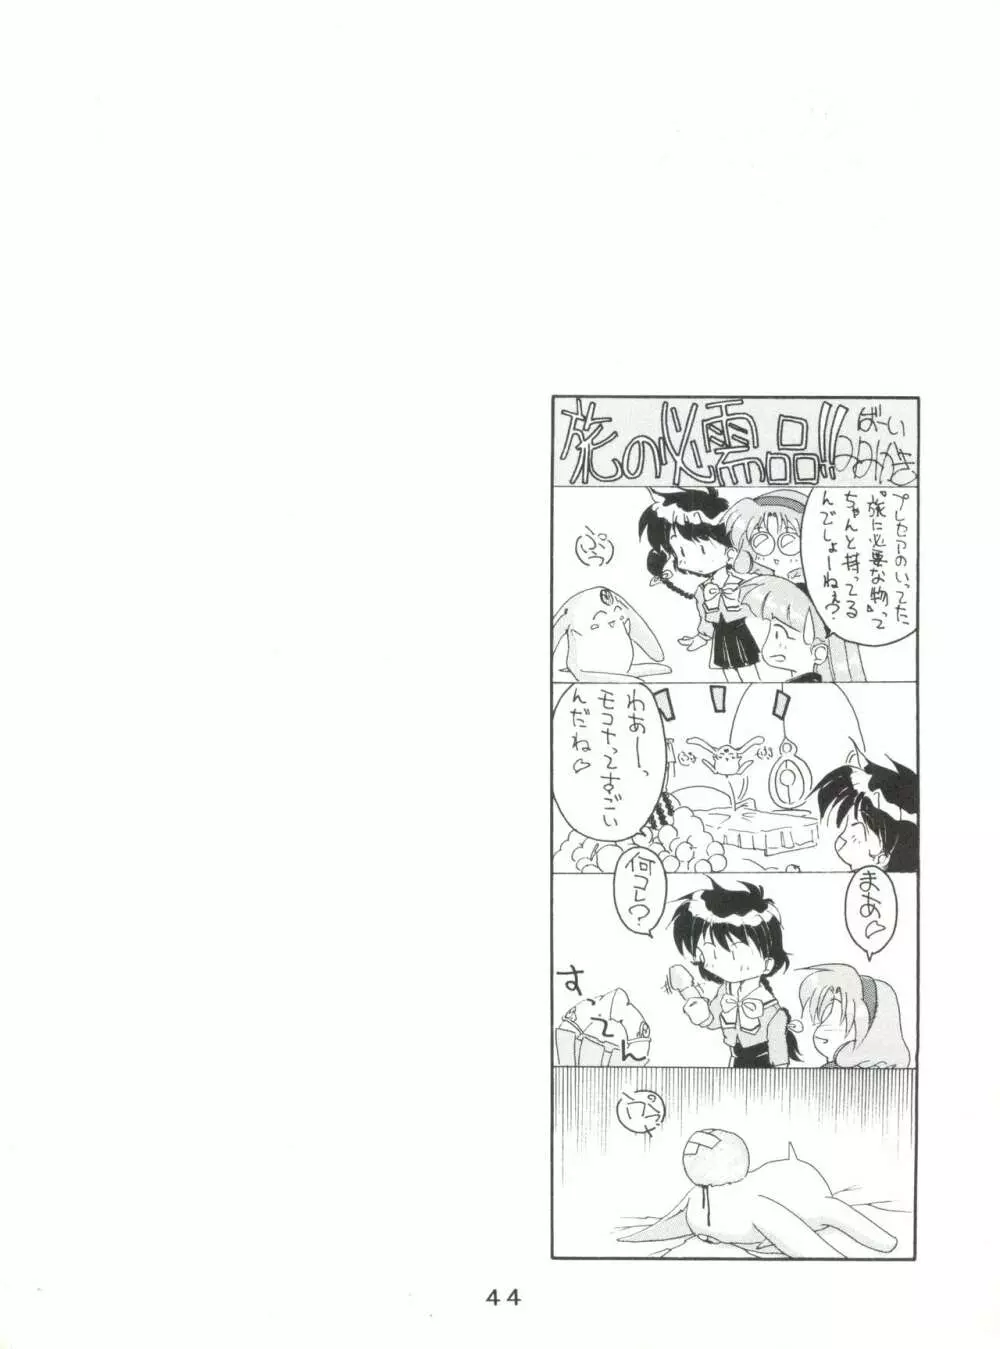 失禁ぱんつ 13 - page44